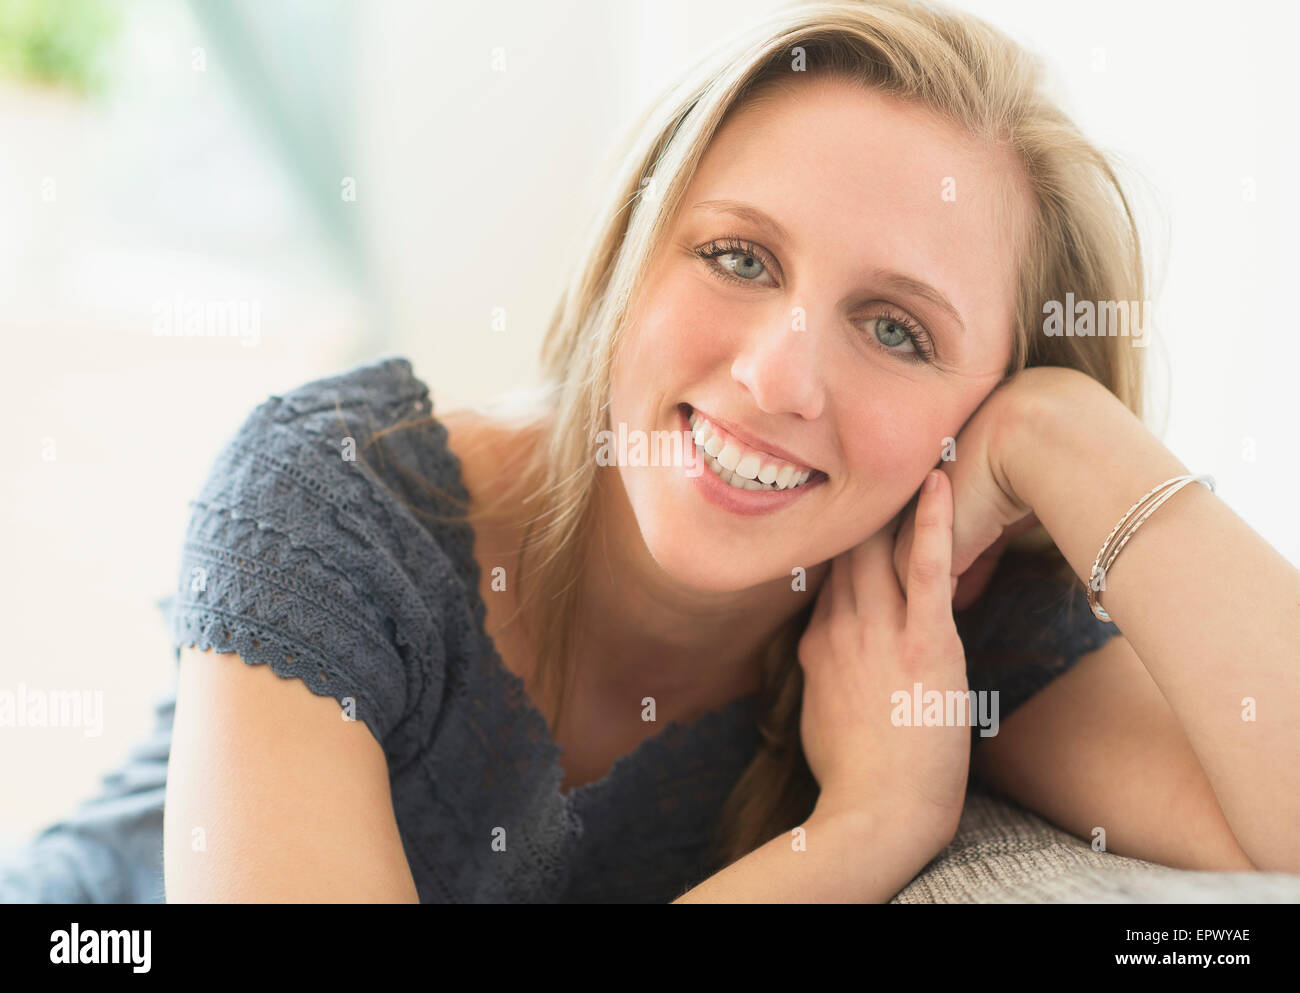 Portrait of woman smiling Banque D'Images